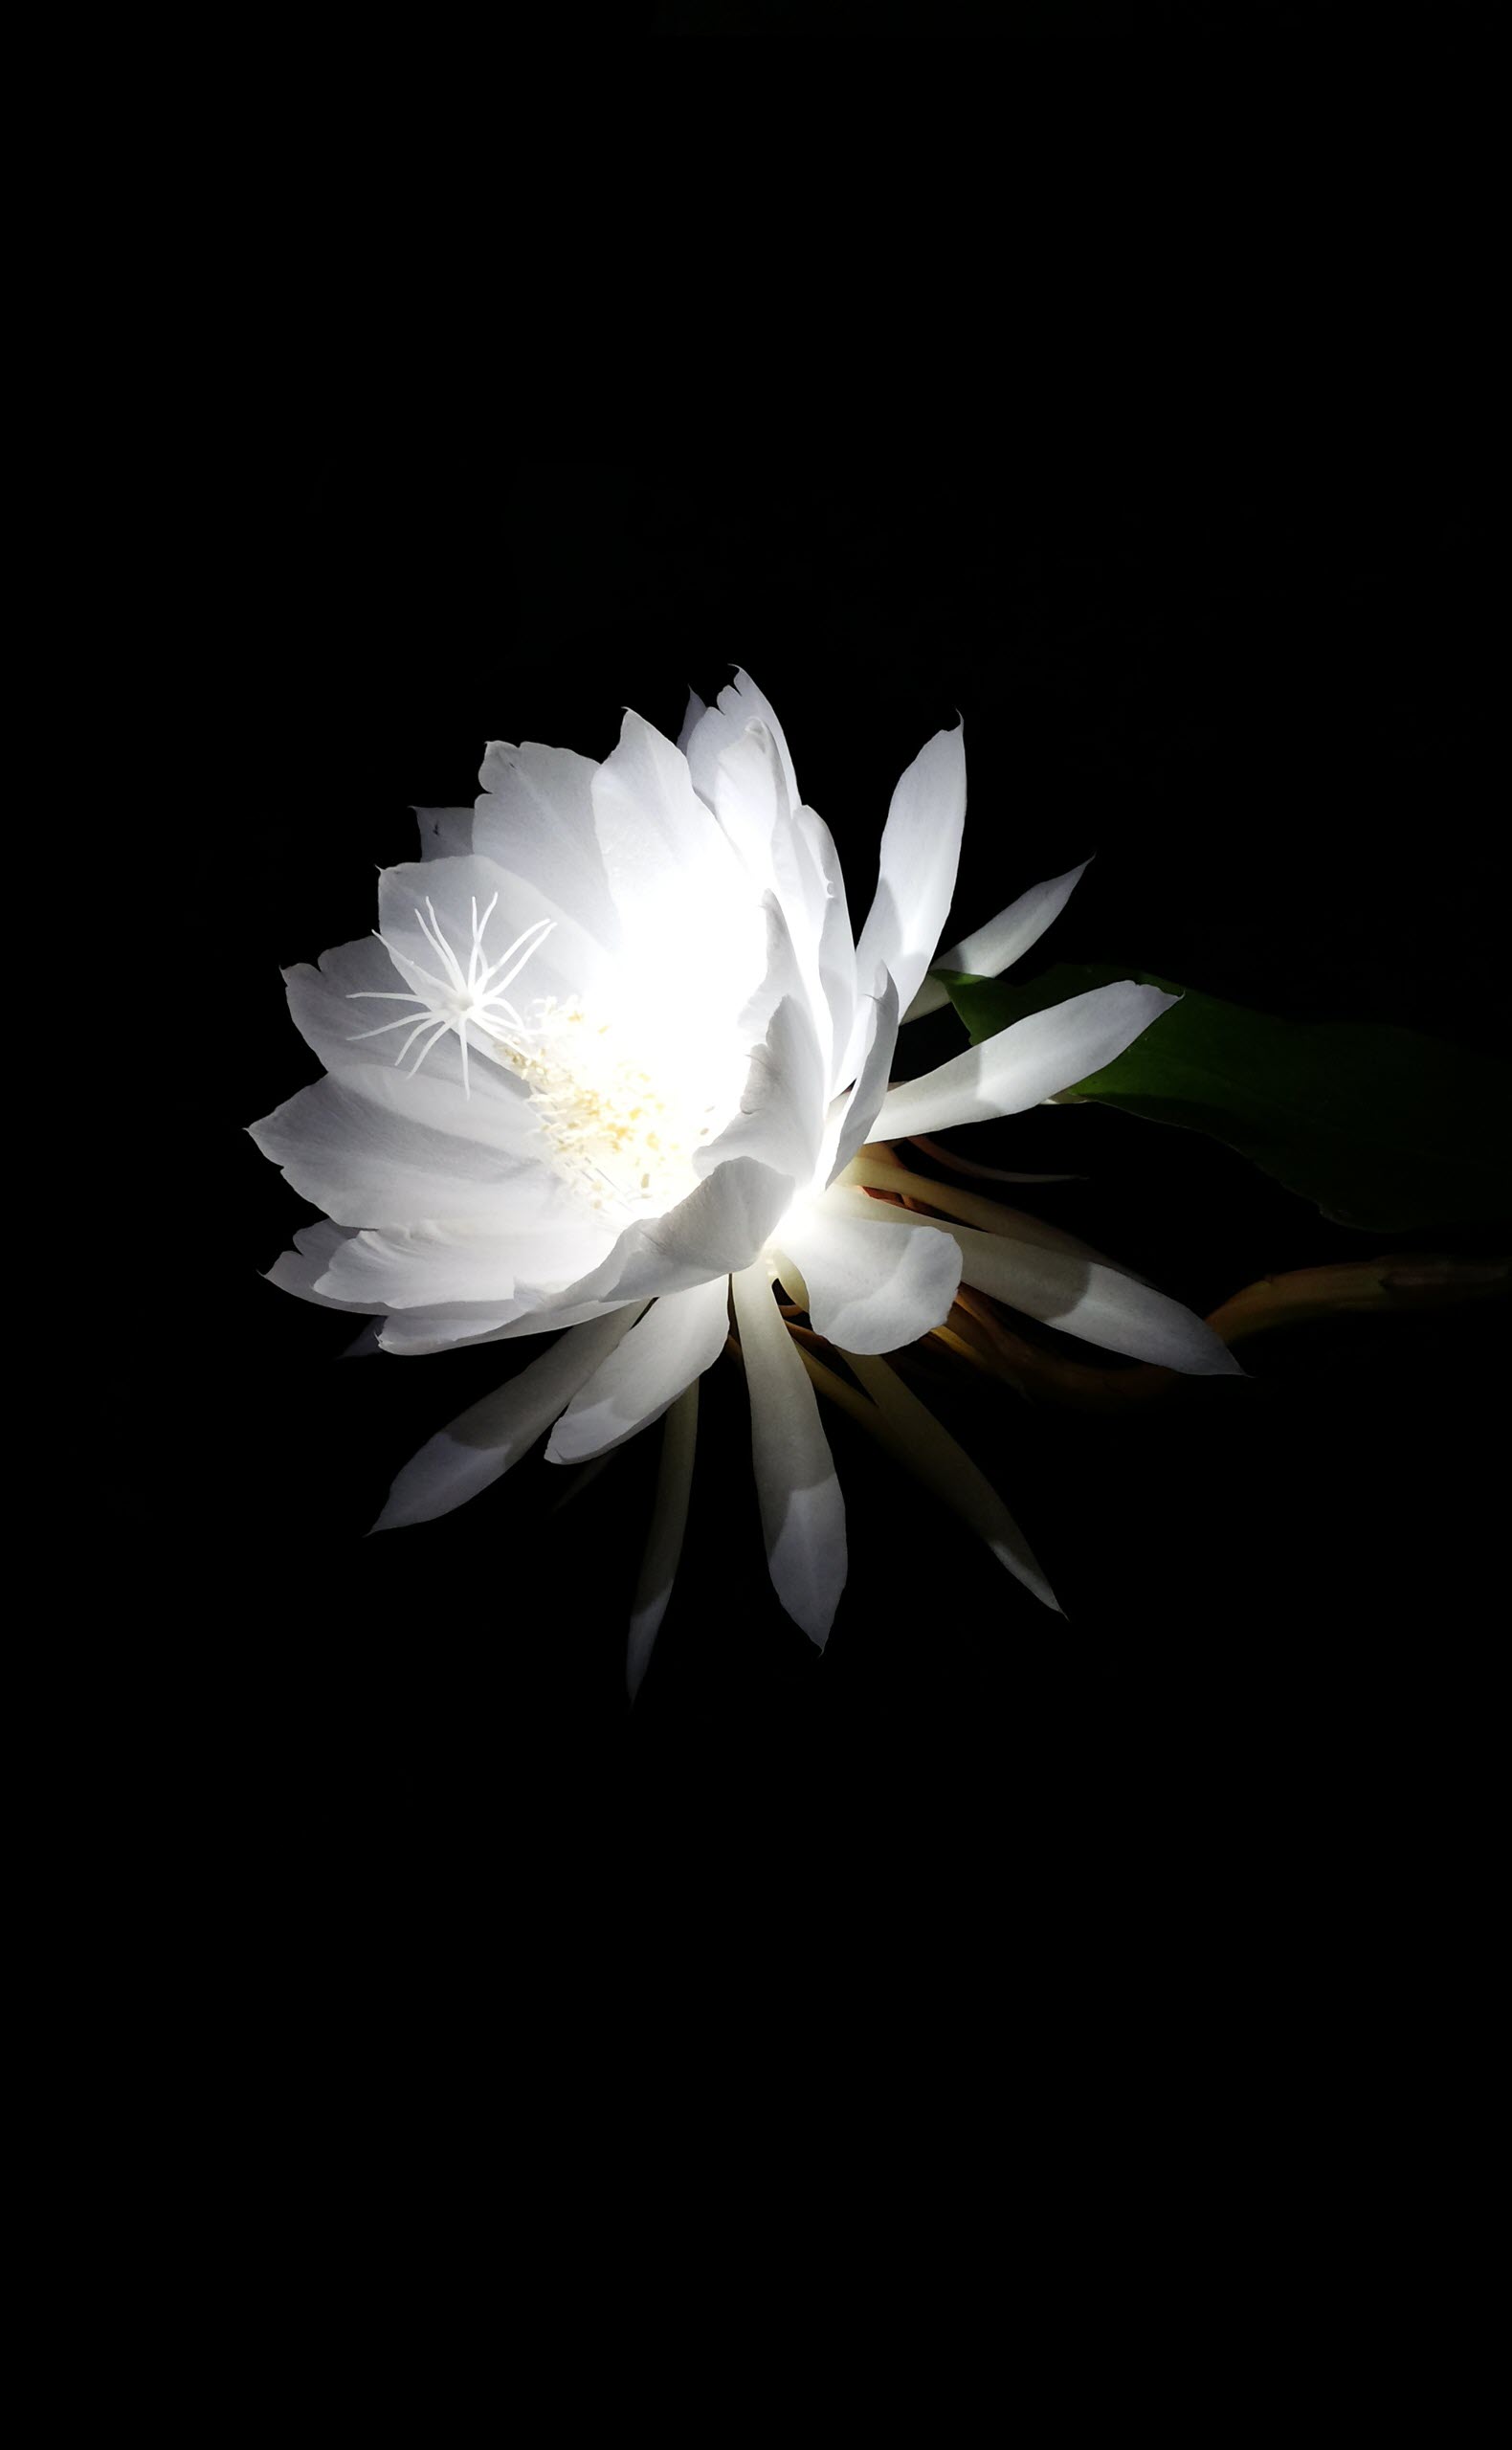 Khám phá vẻ đẹp độc đáo của hoa Quỳnh nền đen